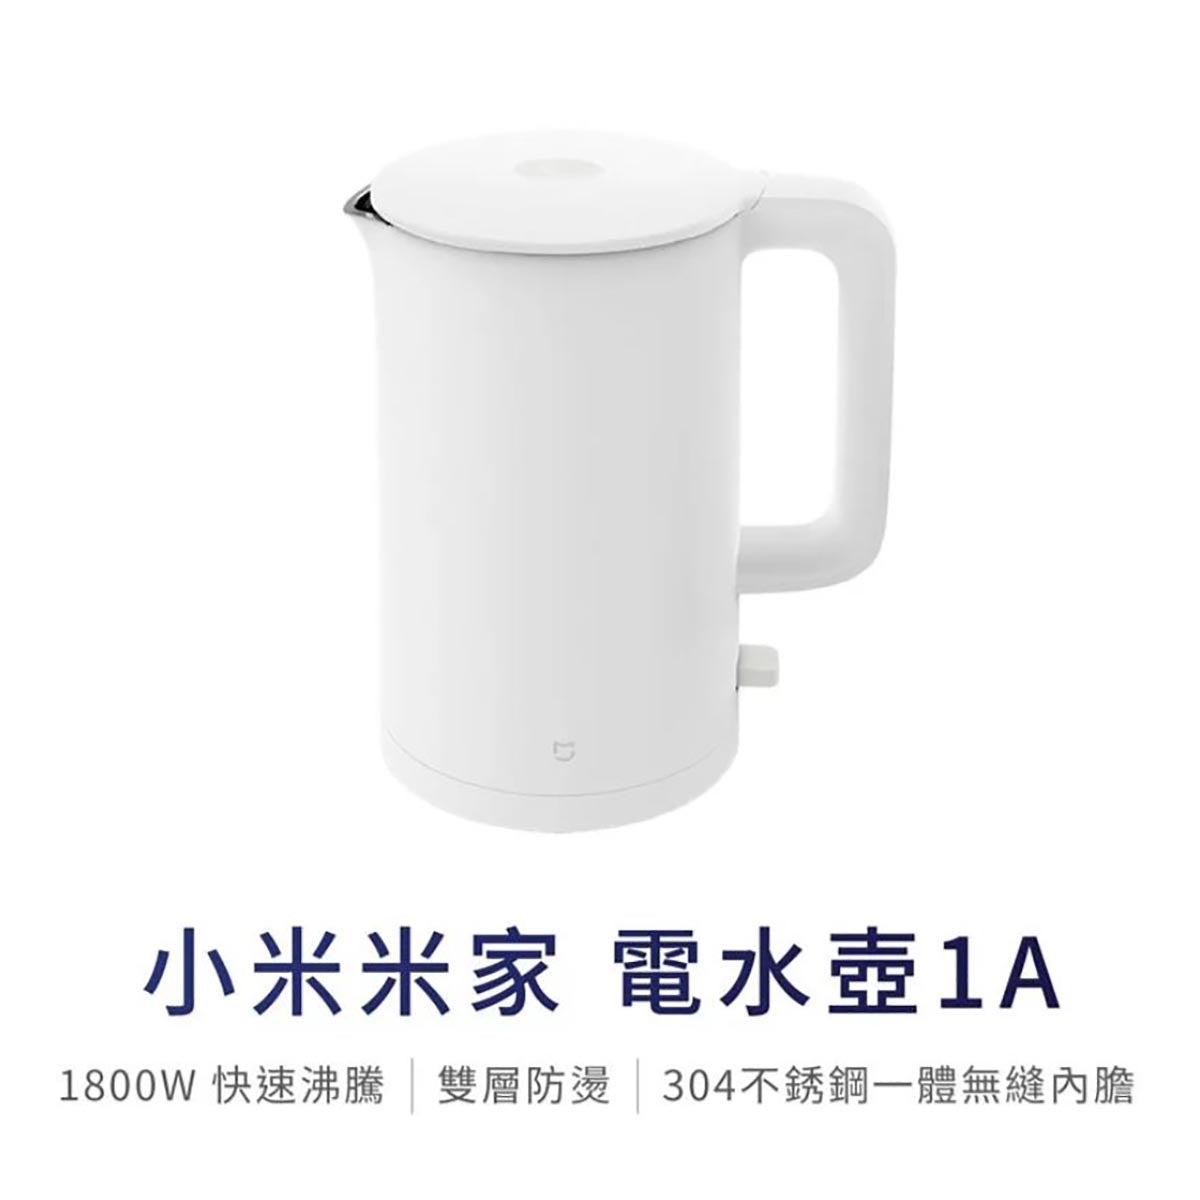 小米米家電熱水壺1A (白色)